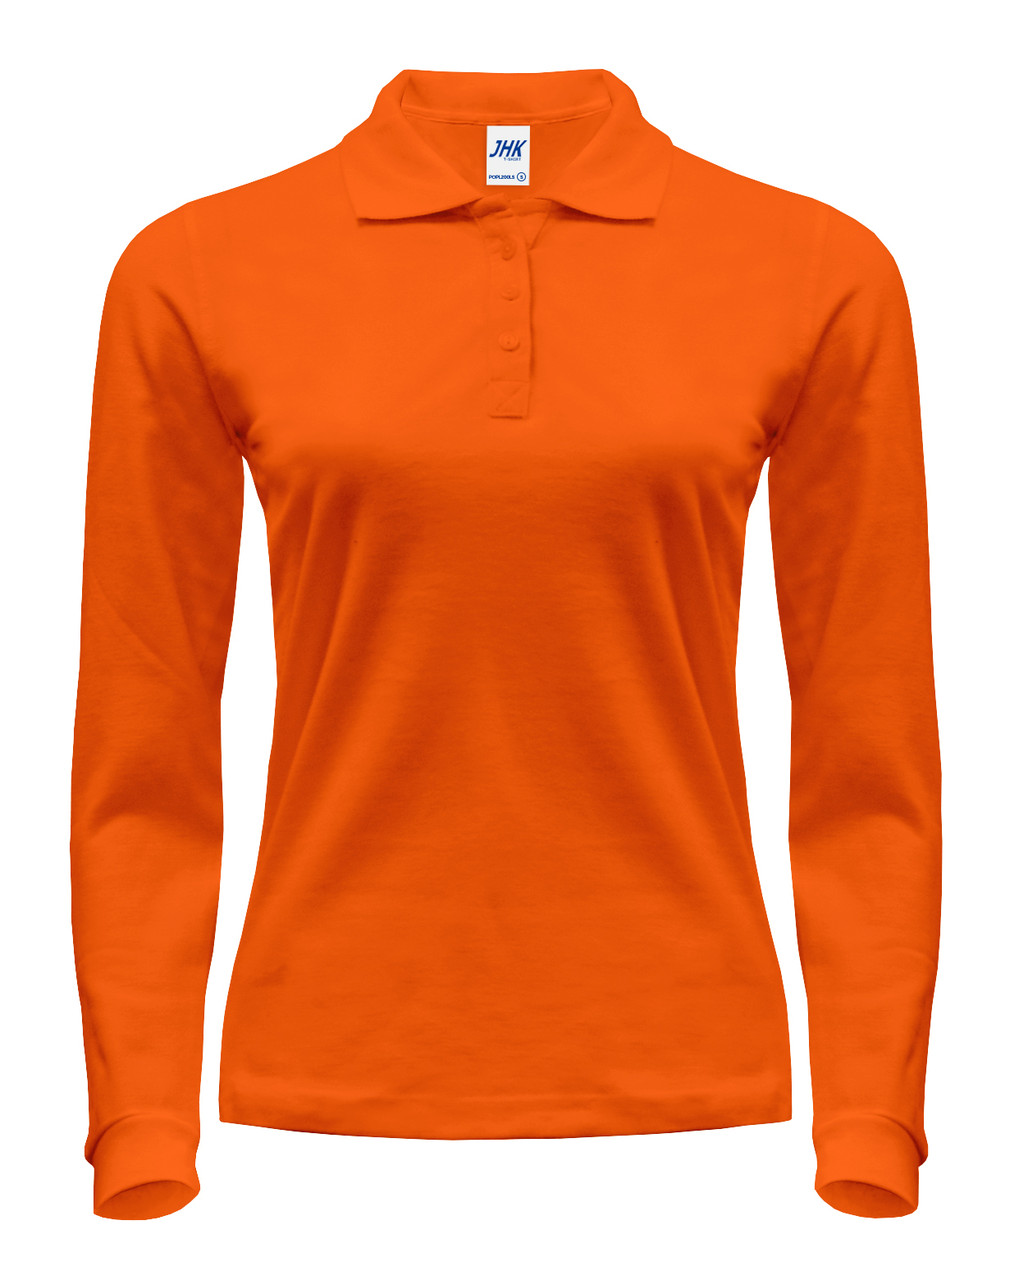 

Женская рубашка-поло с длинными рукавами JHK POLO REGULAR LADY LS цвет оранжевый OR XXL, 52